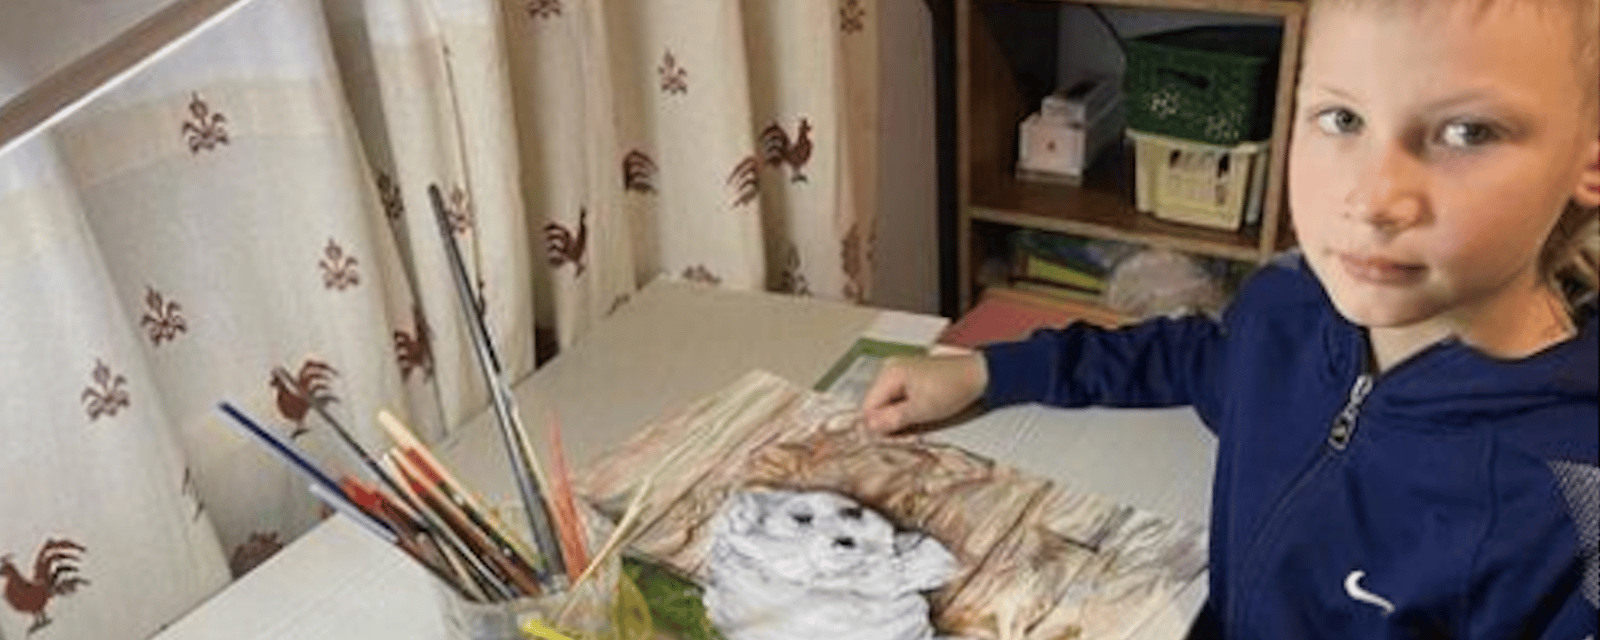 À 9 ans seulement, il crée des tableaux incroyables